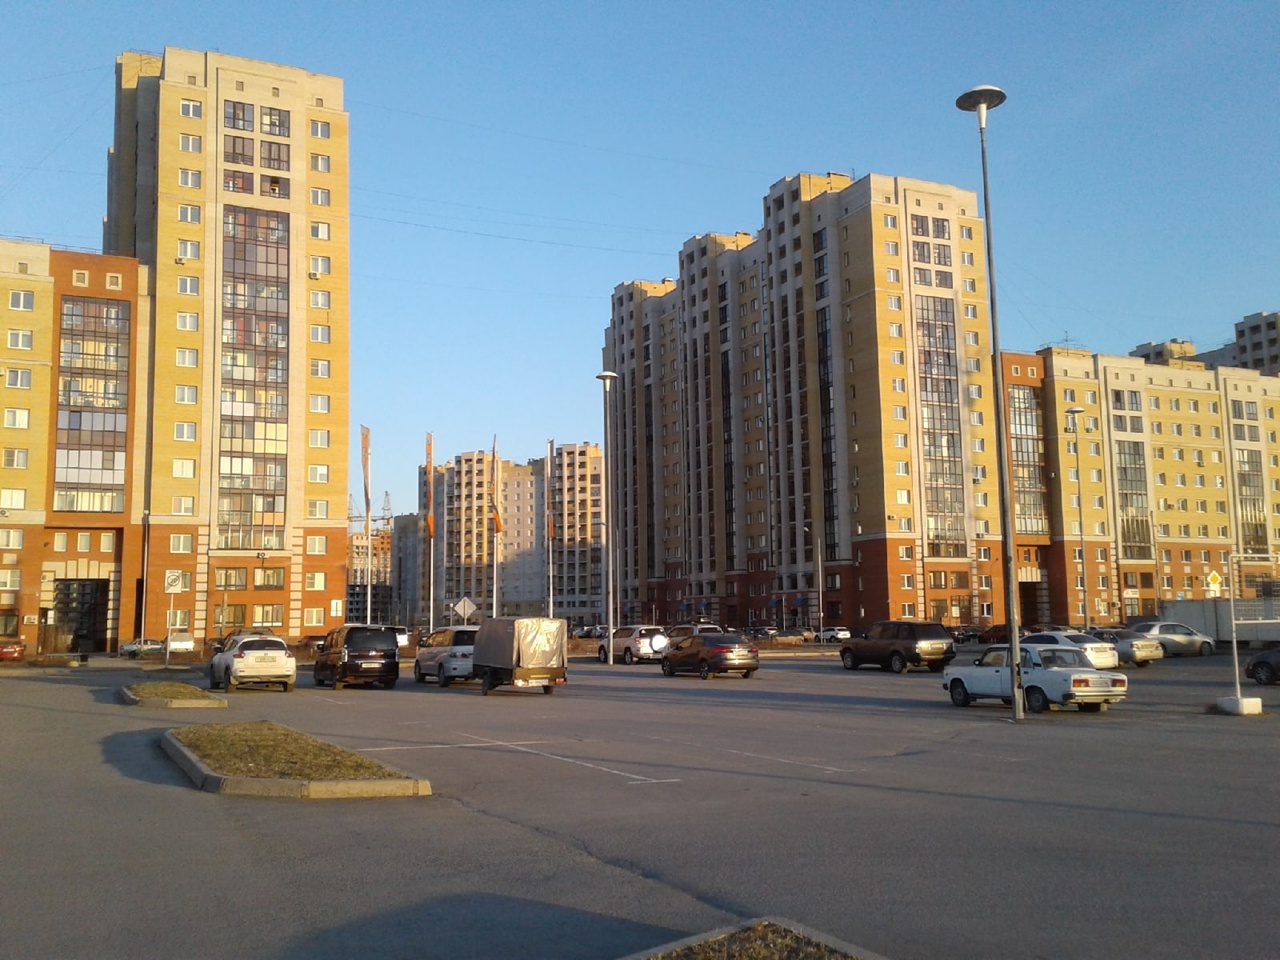 Жизнь в омских новостройках: «Прибрежный» – дорогущие квартиры и глобальная проблема #Омск #Общество #Сегодня